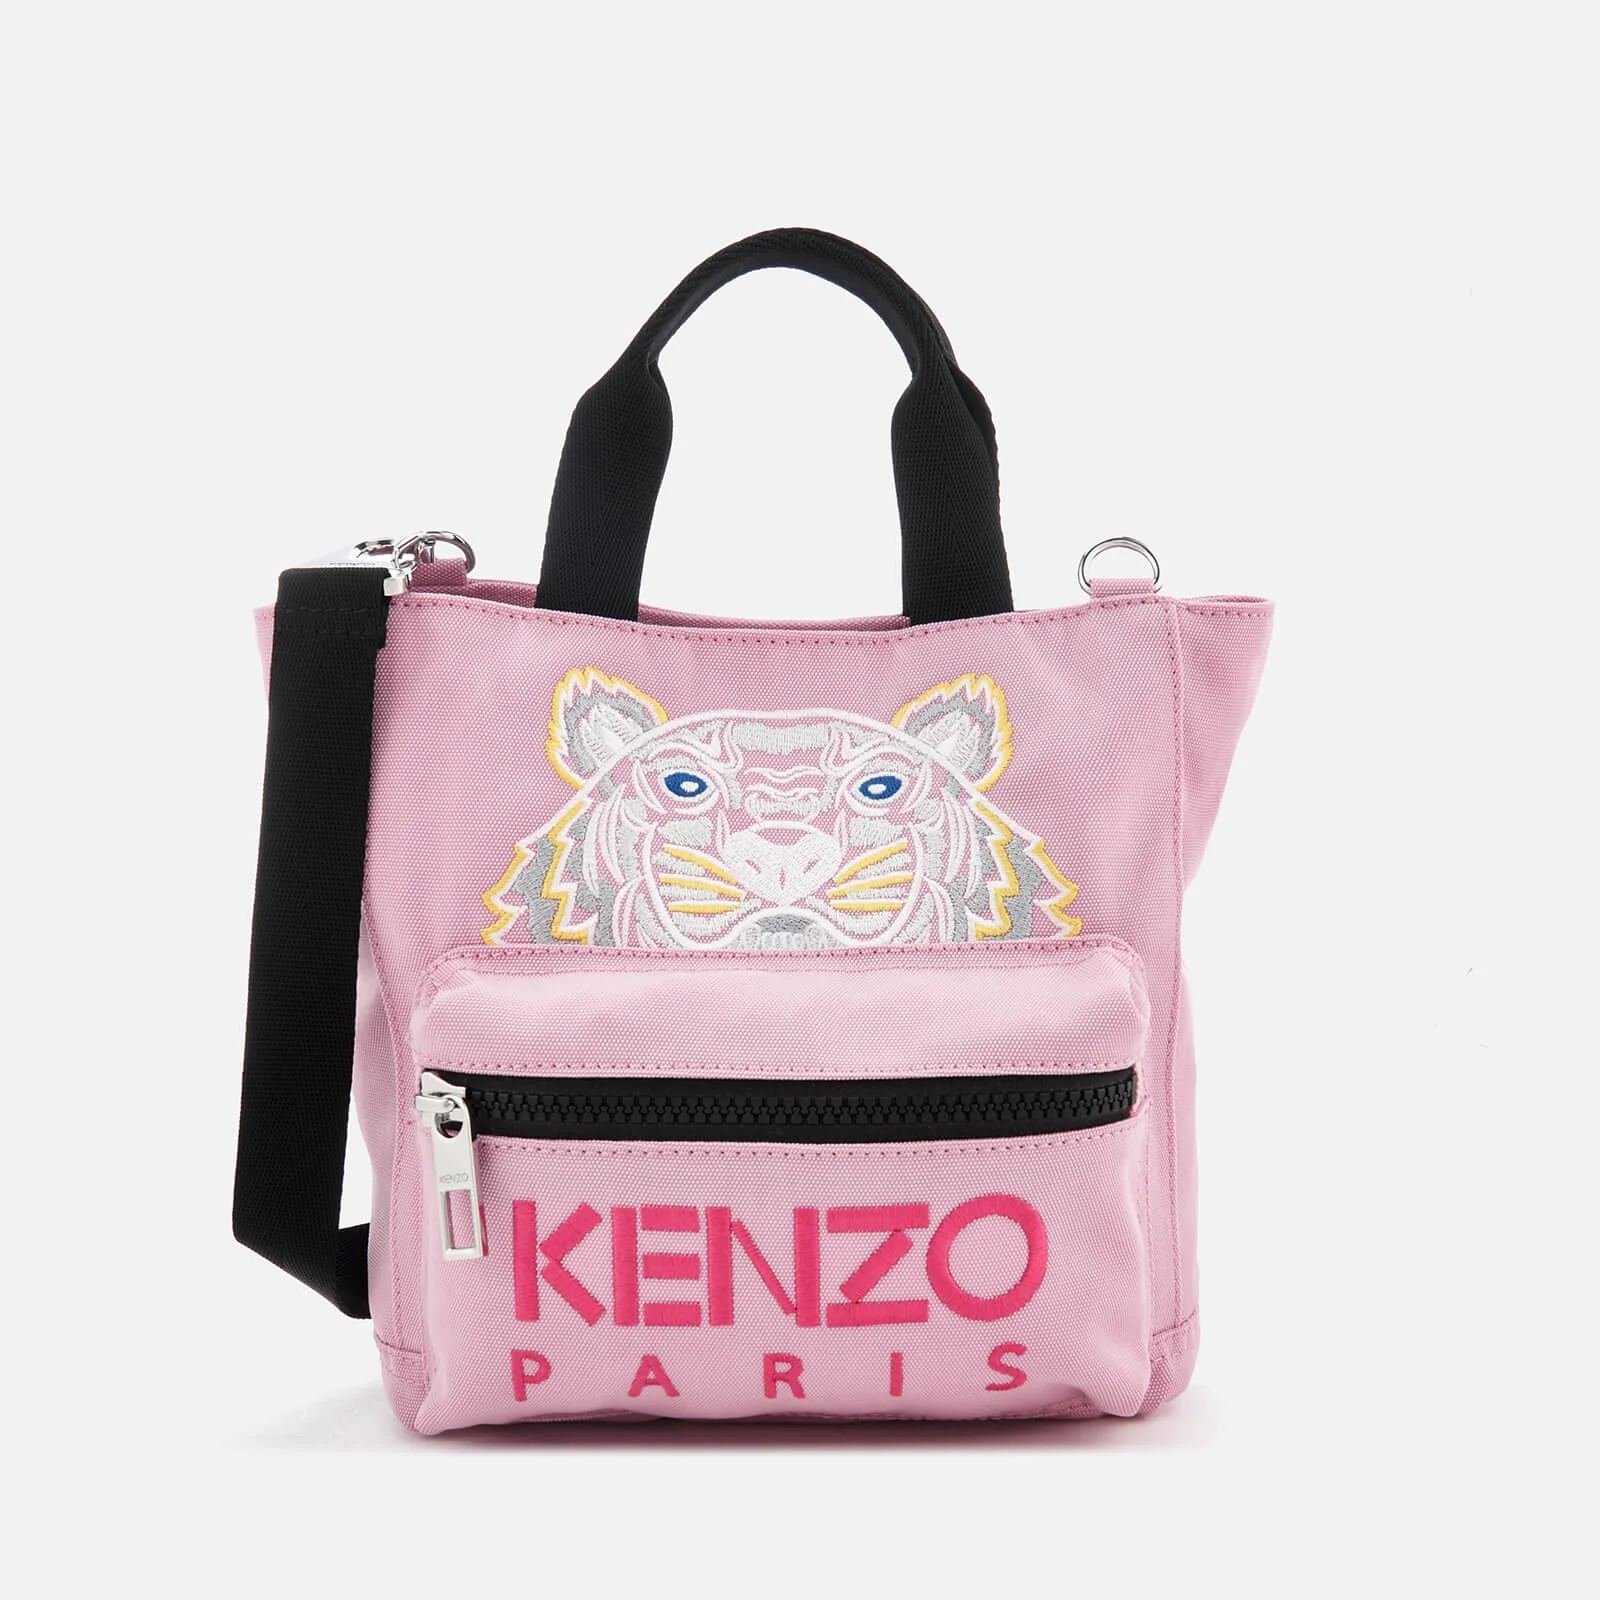 KENZO Women's Icon Mini Tote Bag - Flamingo Pink Image 1